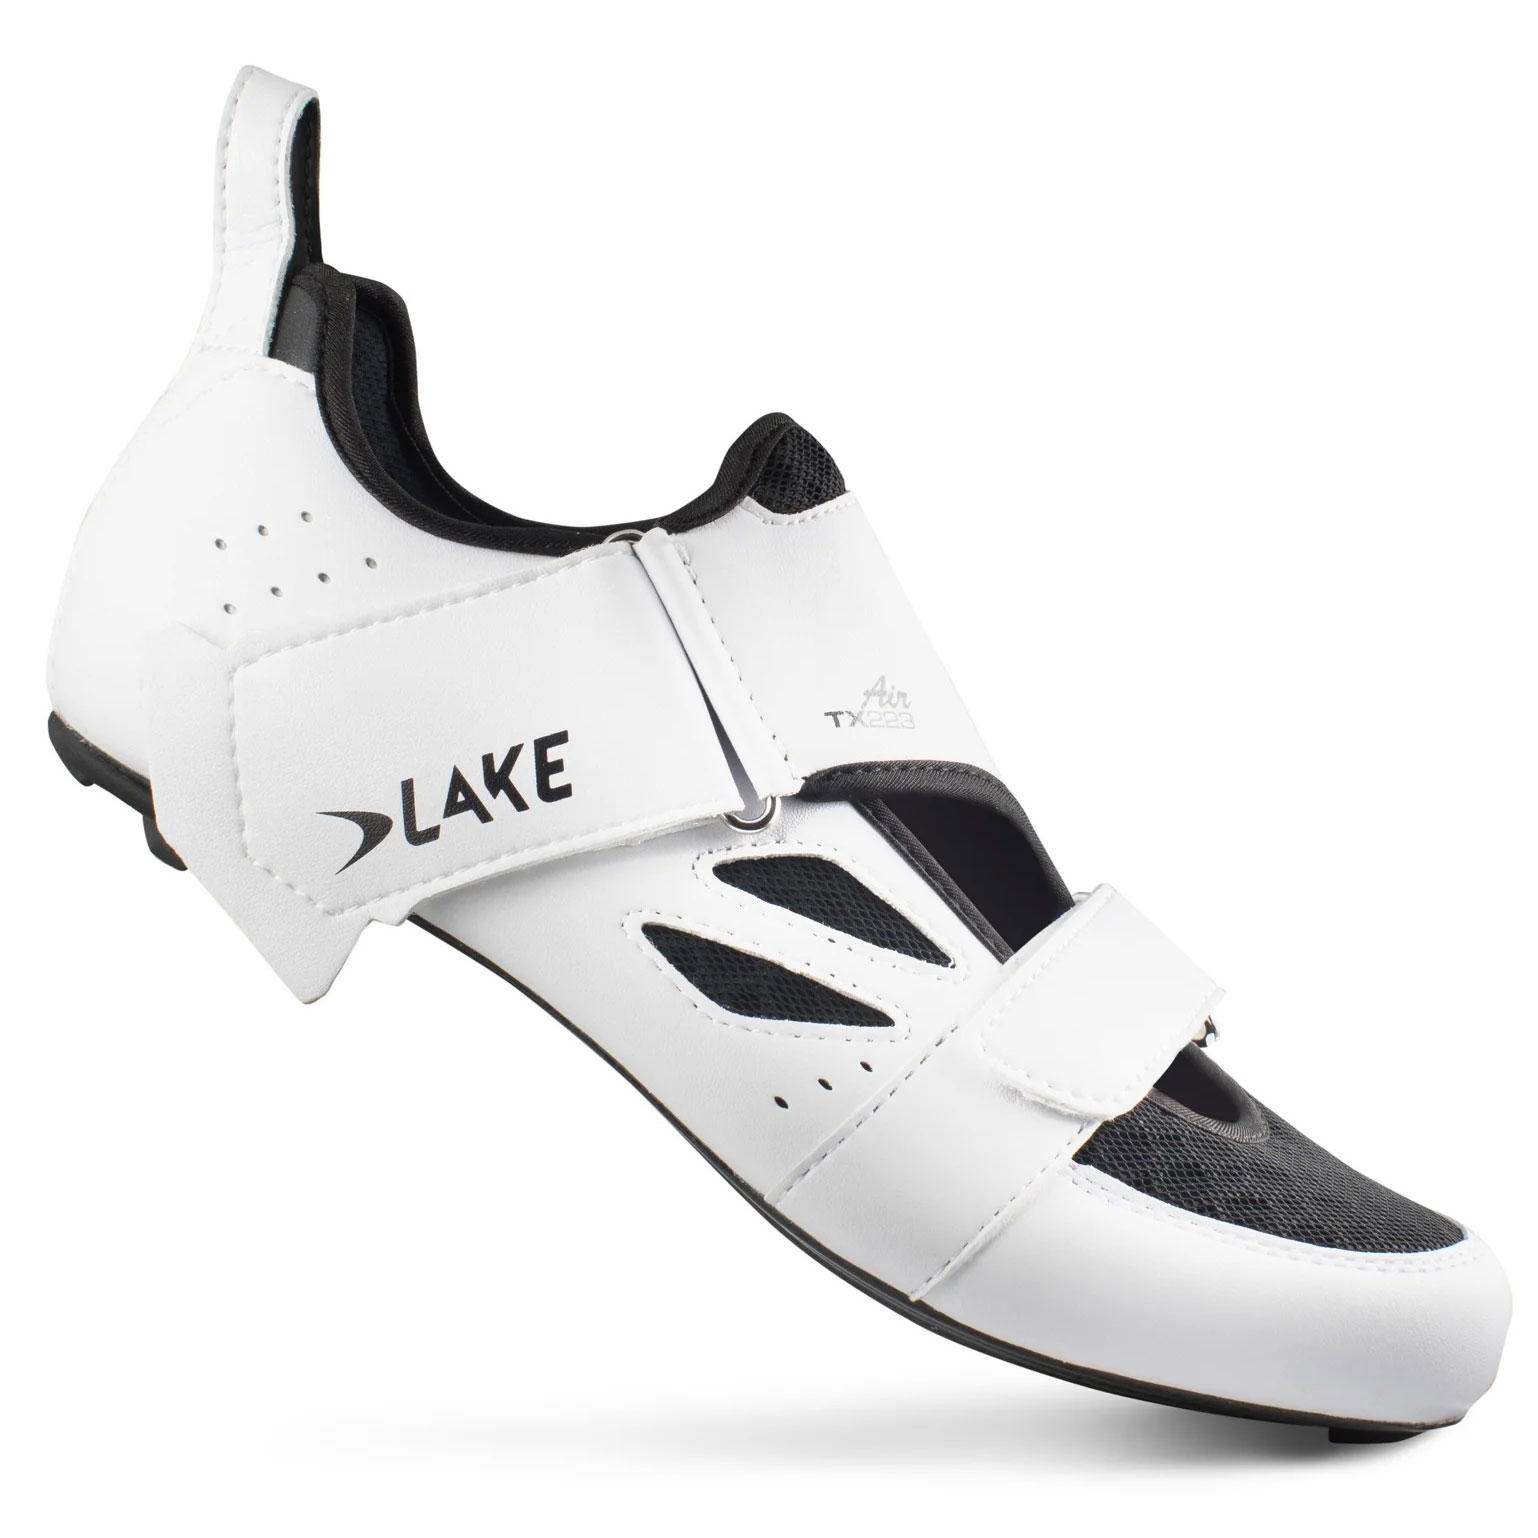 Productfoto van Lake TX223 Air Triatlon-Schoenen Heren - wit / zwart